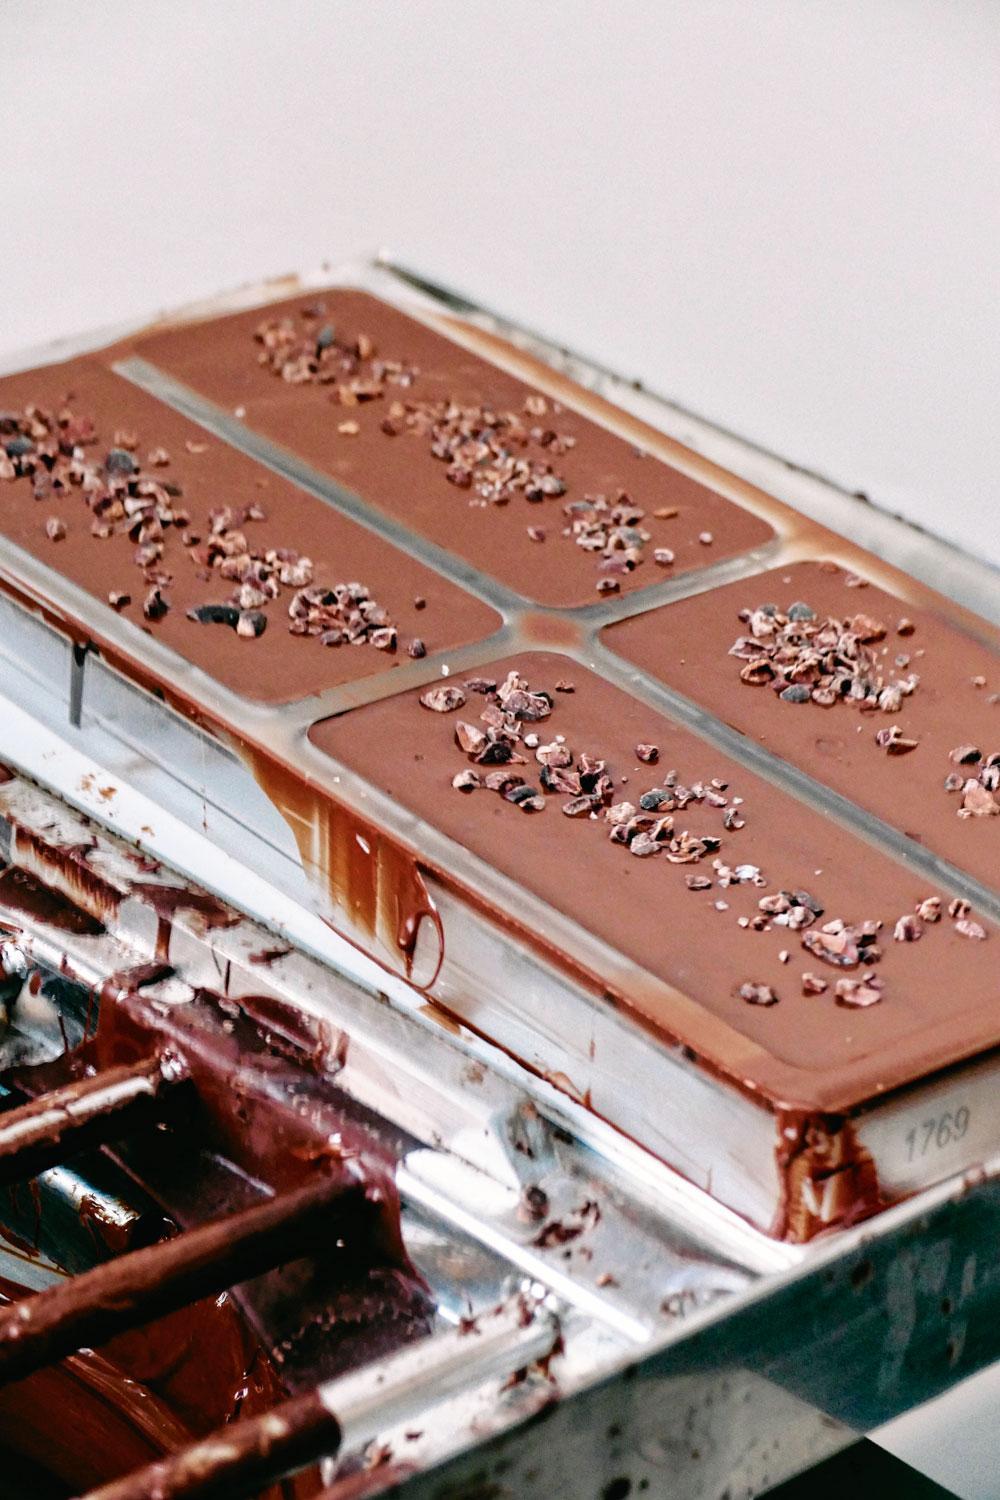 De perfecte cacaoboon: twee Belgische merken over verfijnde en ethische chocolade